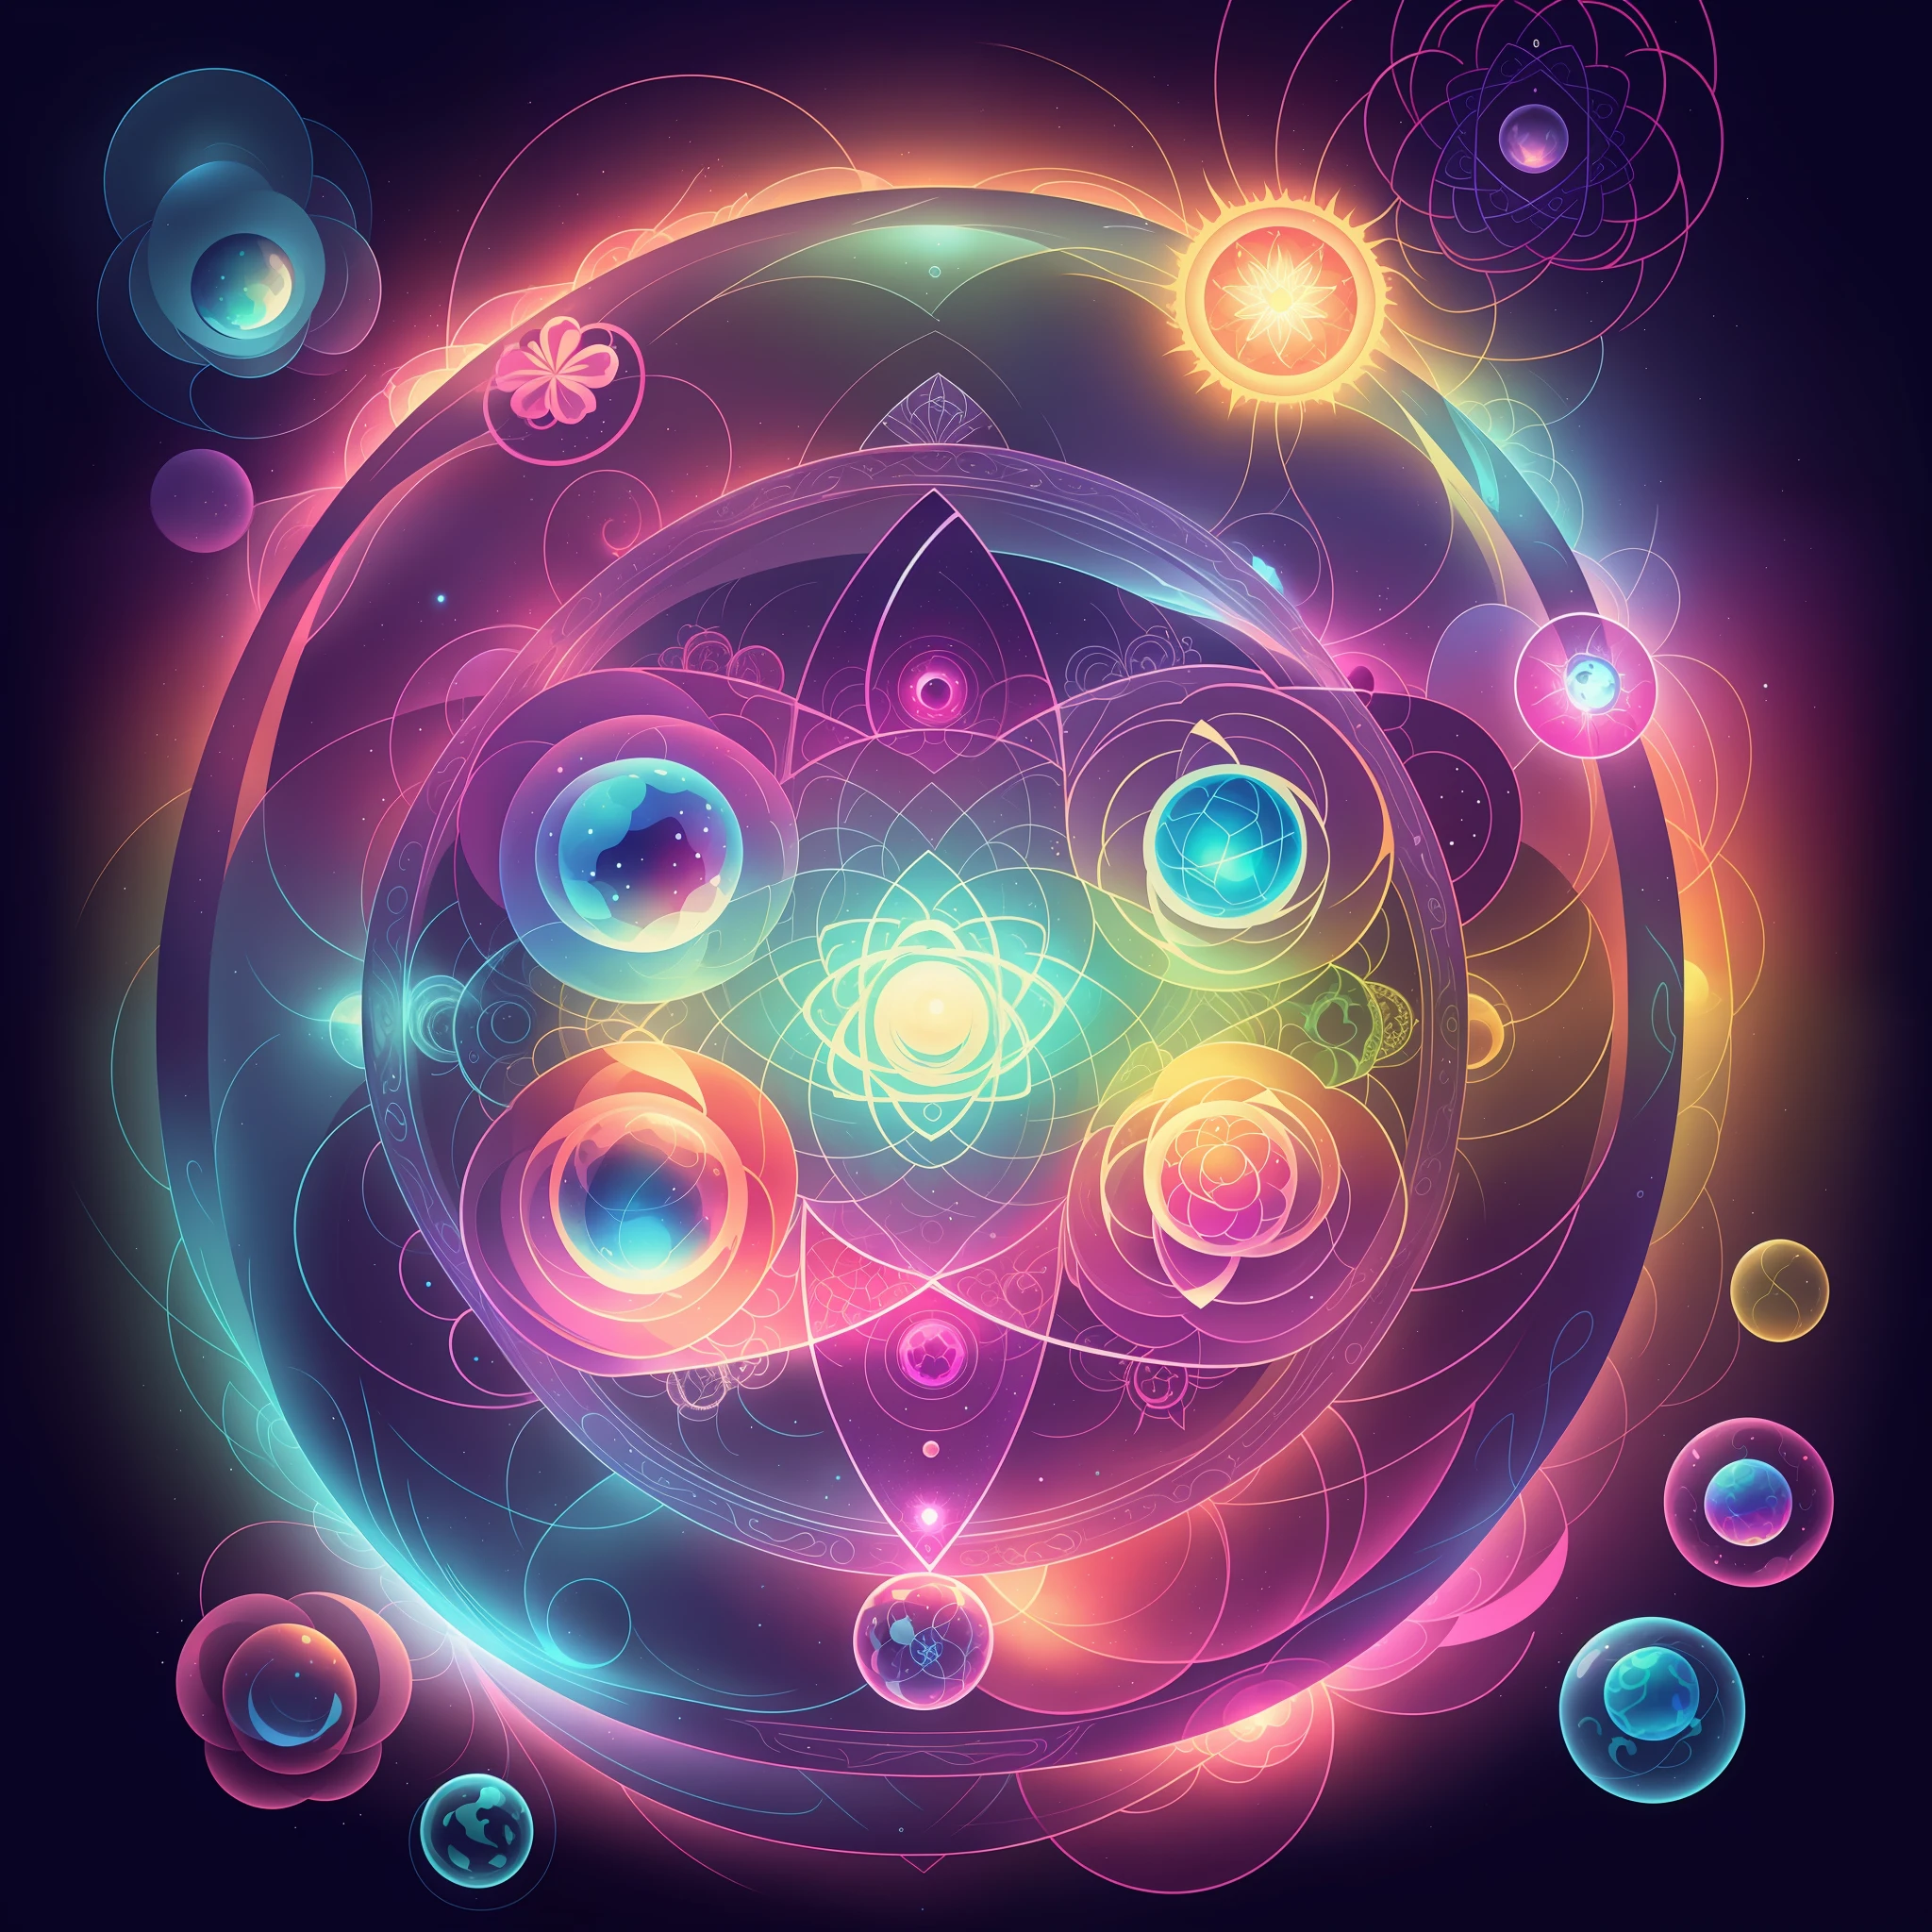 玻璃杯的特写，里面有一朵花, 细胞核, 原子, 环面能量, 數位插圖輻射, 阿卡什, 煉金術的al, 能量球, 量子 deep magic, 量子, 任何脈輪, 能量核心, 神圣的分形结构, 煉金術的al still, 煉金術的, 發光星雲, 辐射连接内, 神圣几何融化--auto--s2